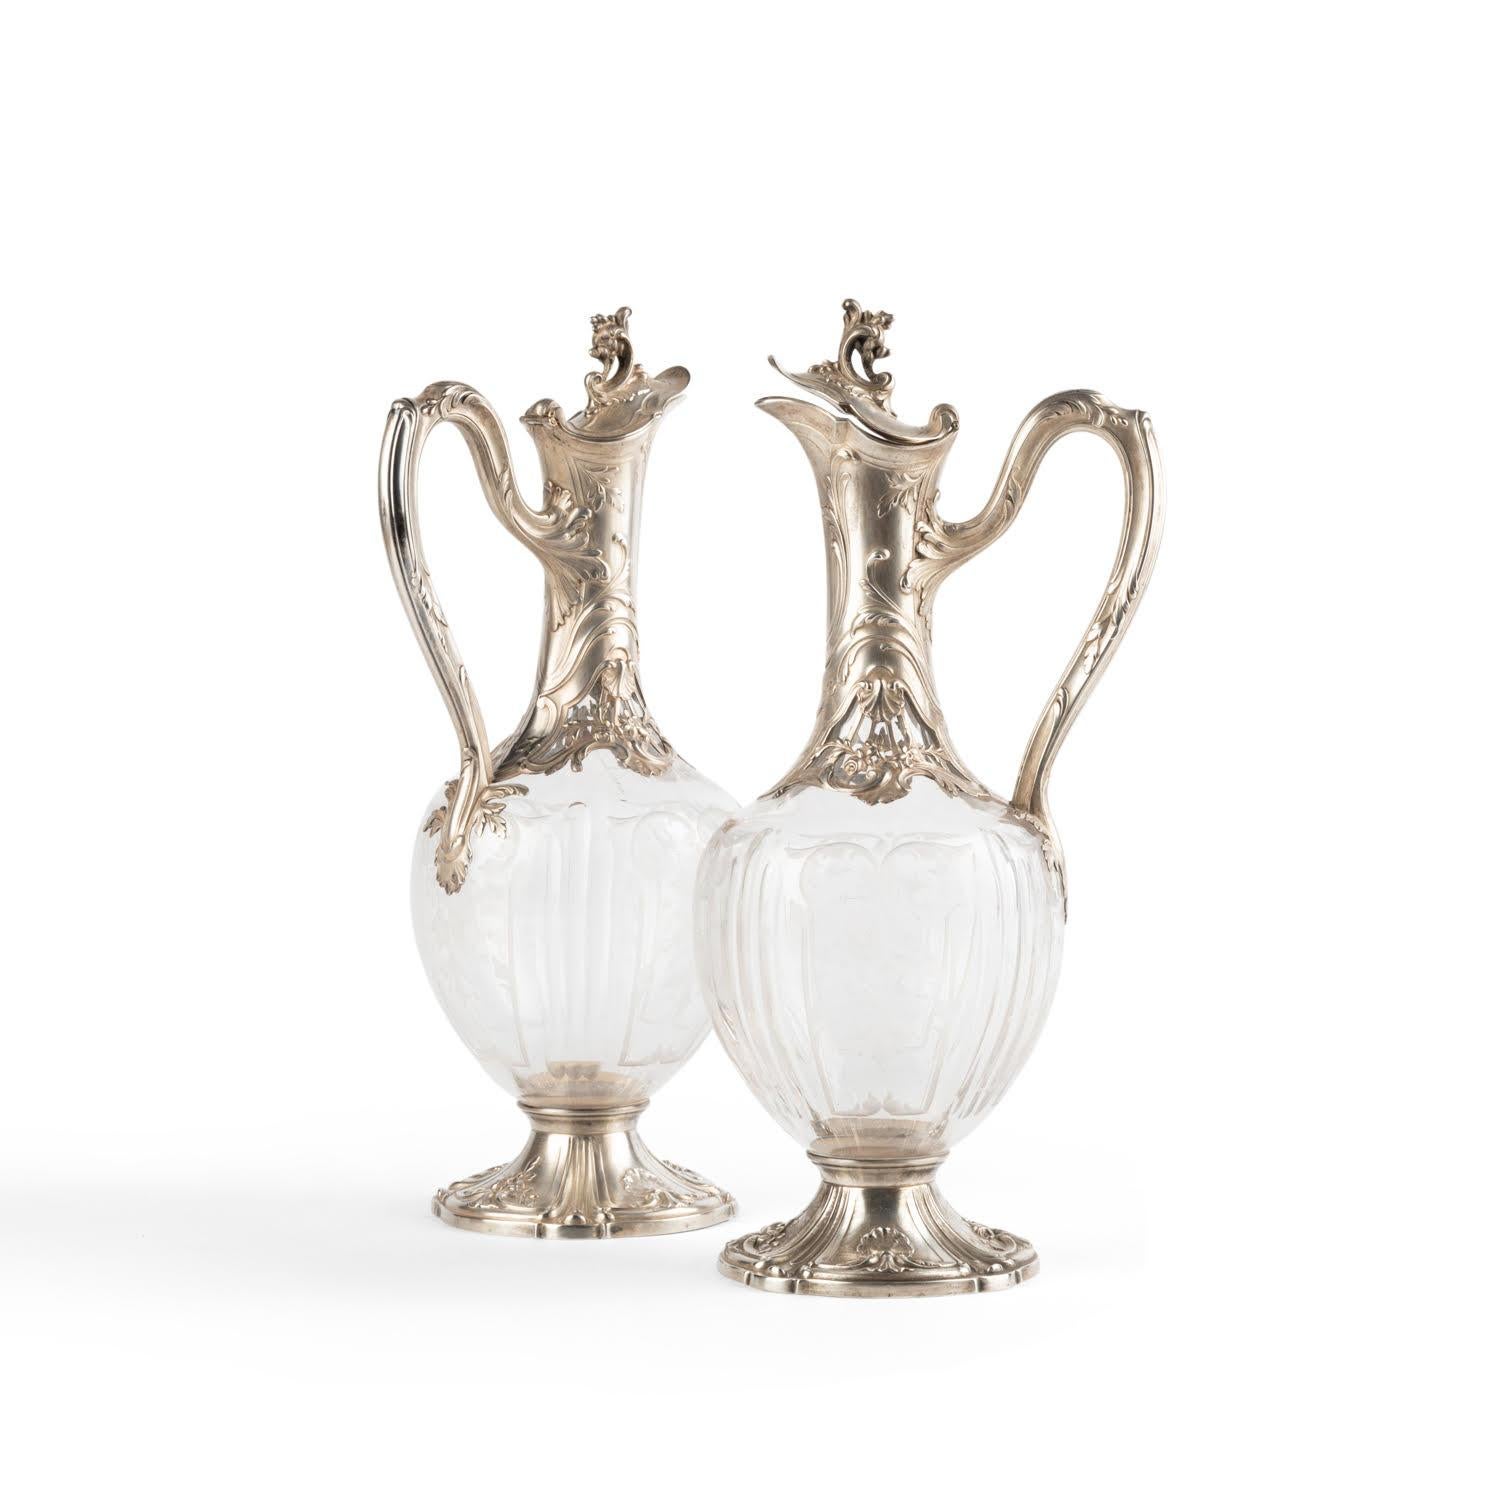 Ein Paar Silber- und Kristallgläser im Stil Louis XV.

Paar Silber- und Kristallgläser im Louis-XV-Stil, 19. Jahrhundert.    
H: 22cm , T: 11cm